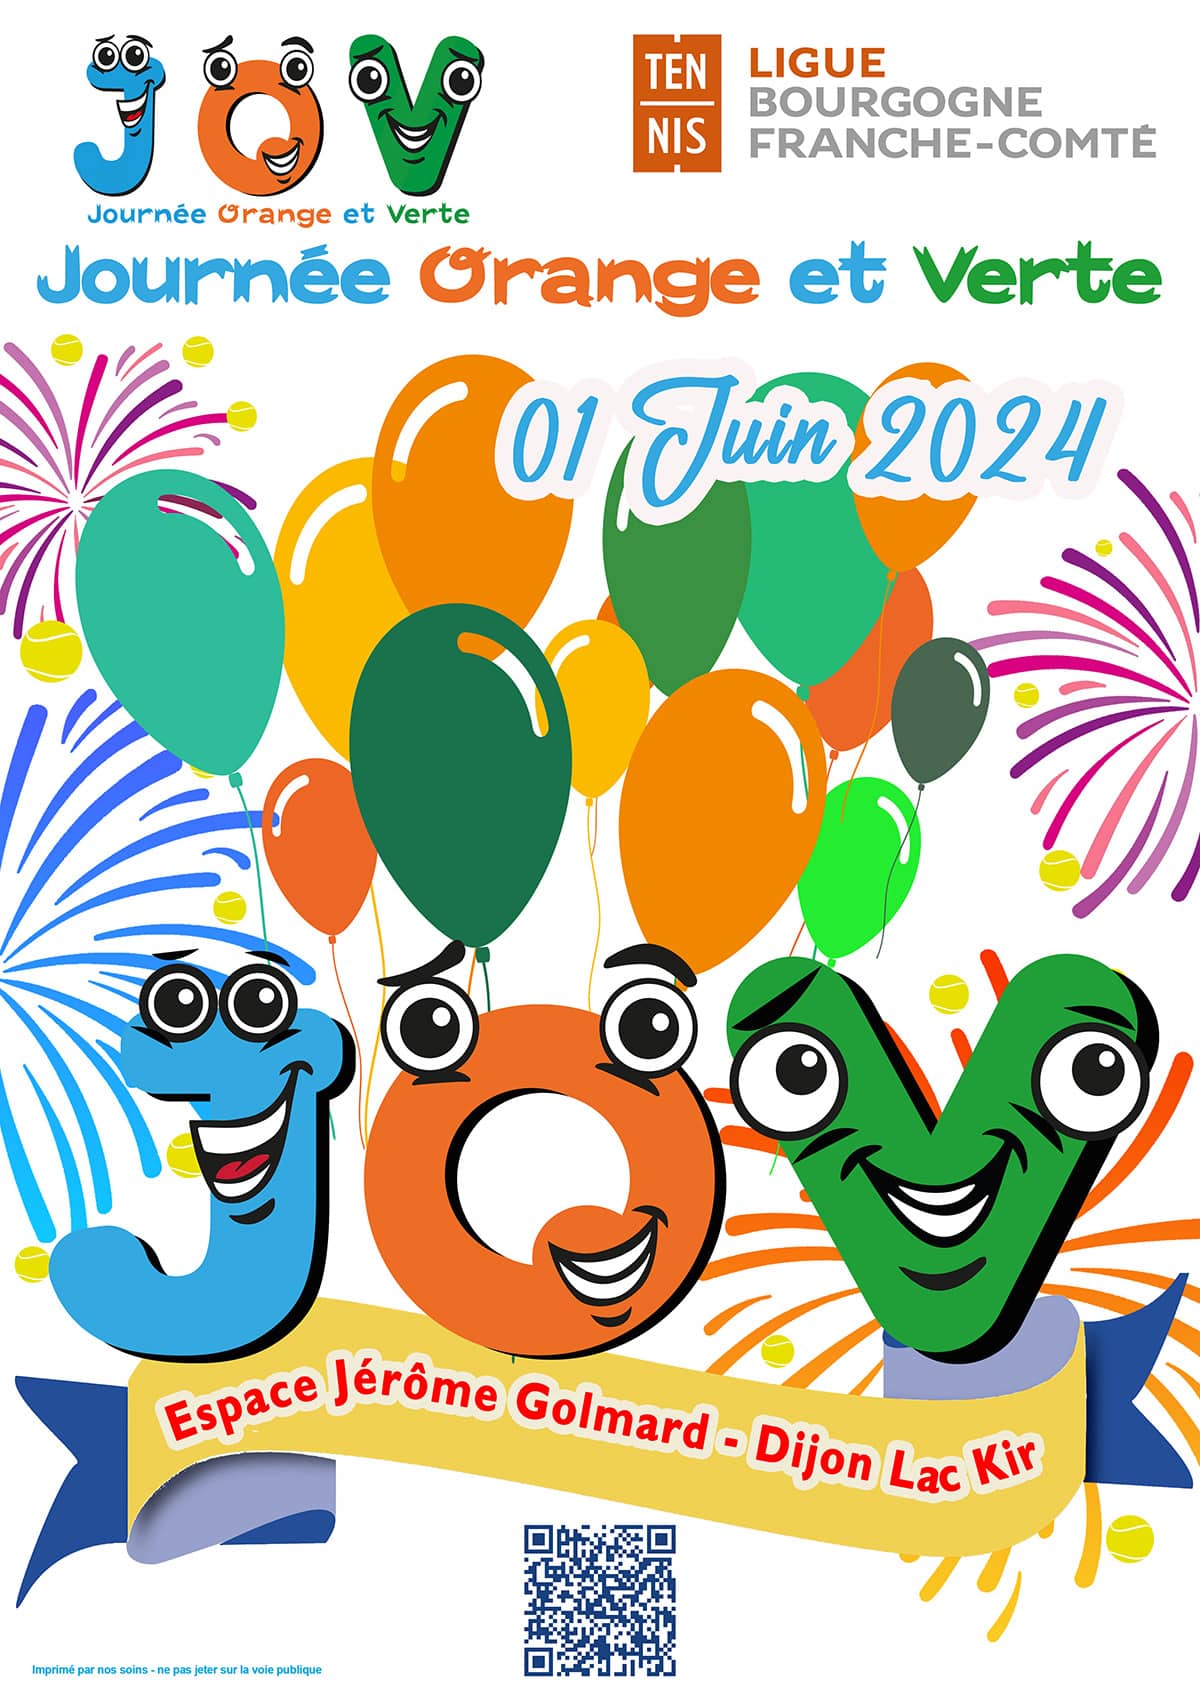 Journée Orange et Verte : Ligue Bourgogne-Franche-Comté de Tennis